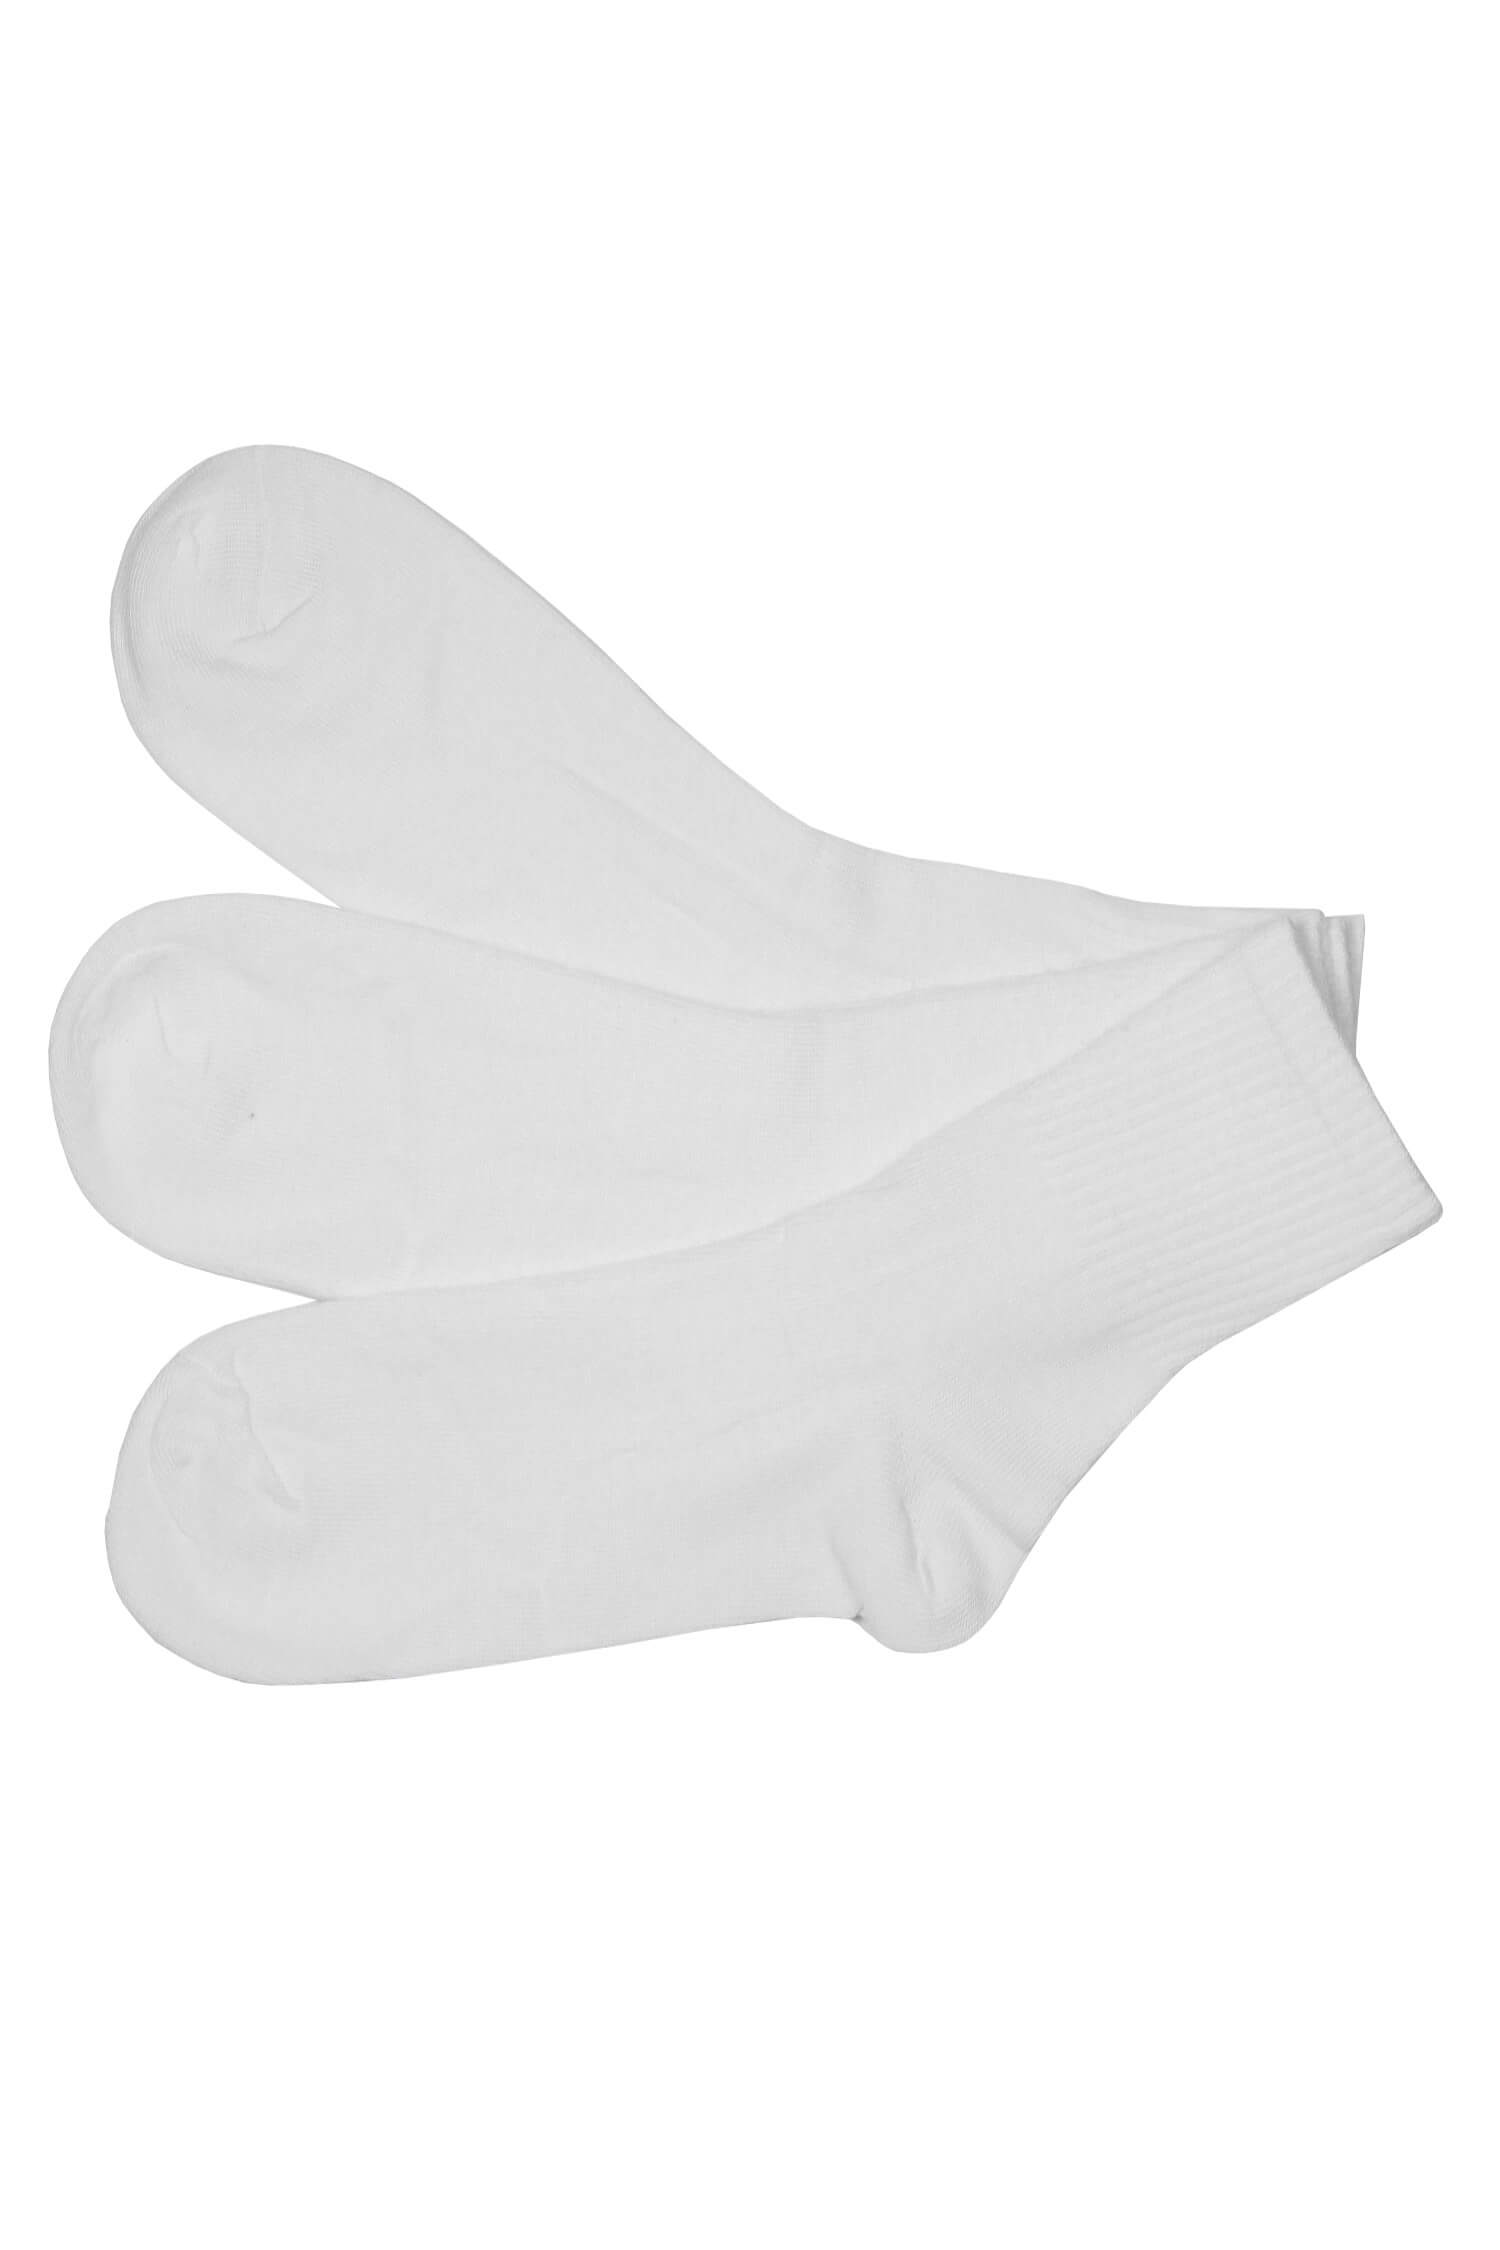 Sportovní bavlněné dámské ponožky ZW401A-3Pack 38-42 bílá